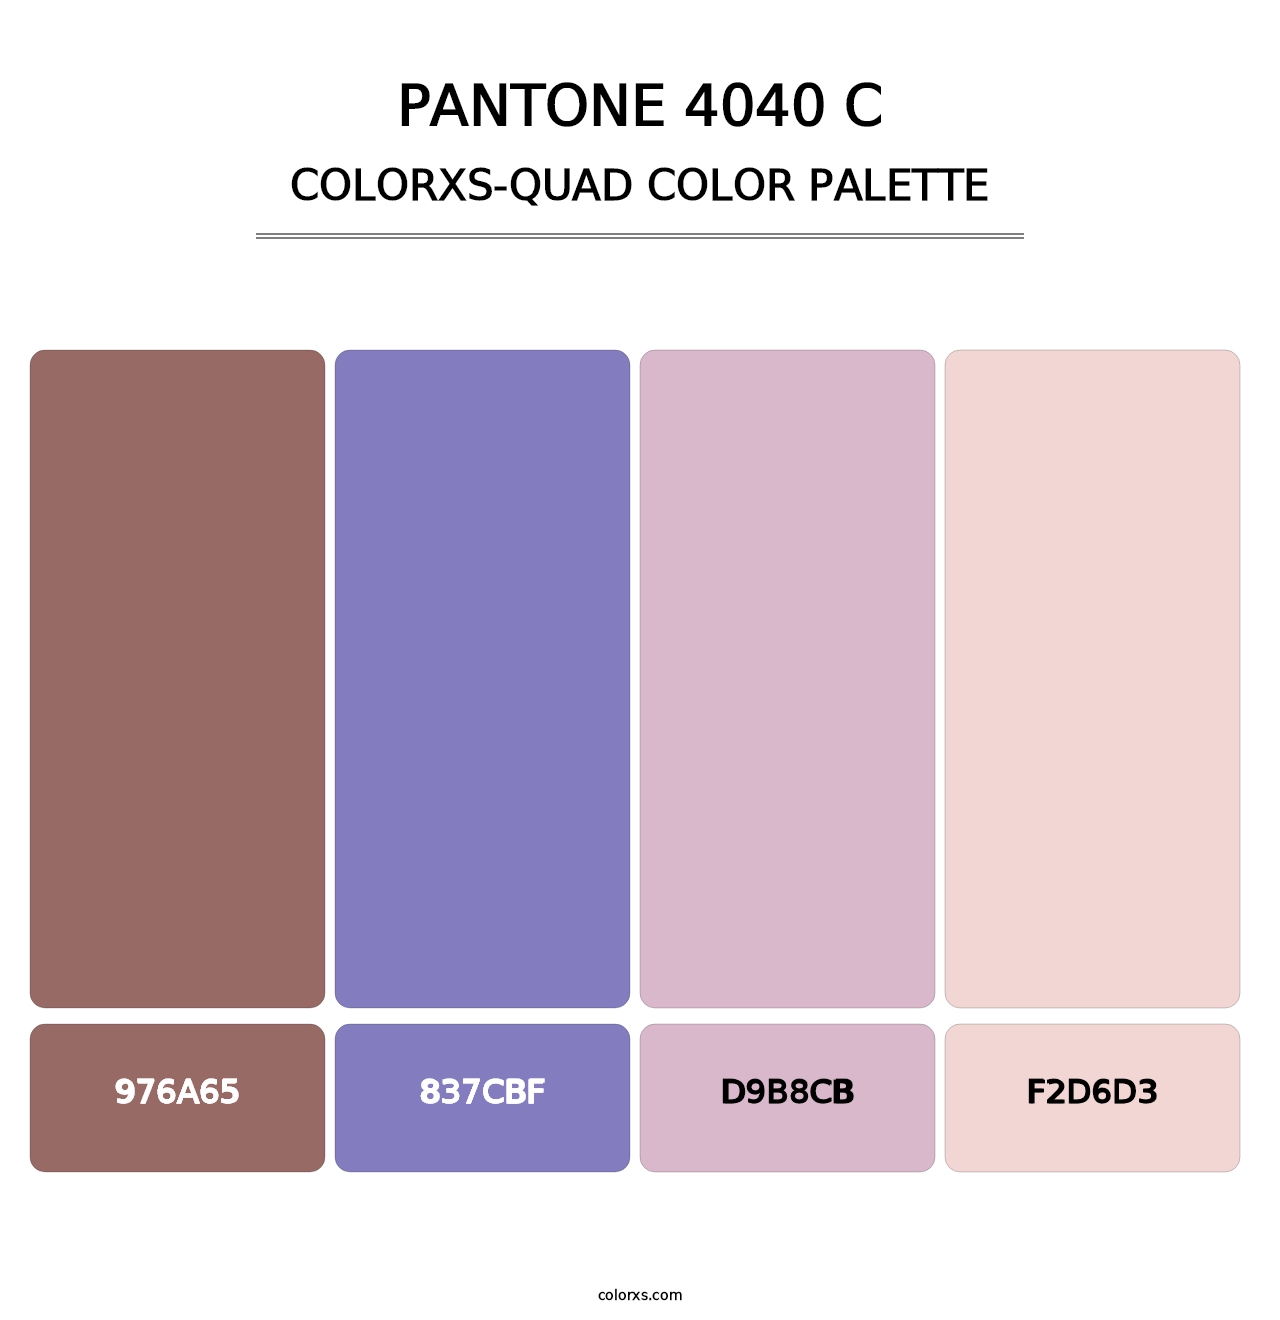 PANTONE 4040 C - Colorxs Quad Palette